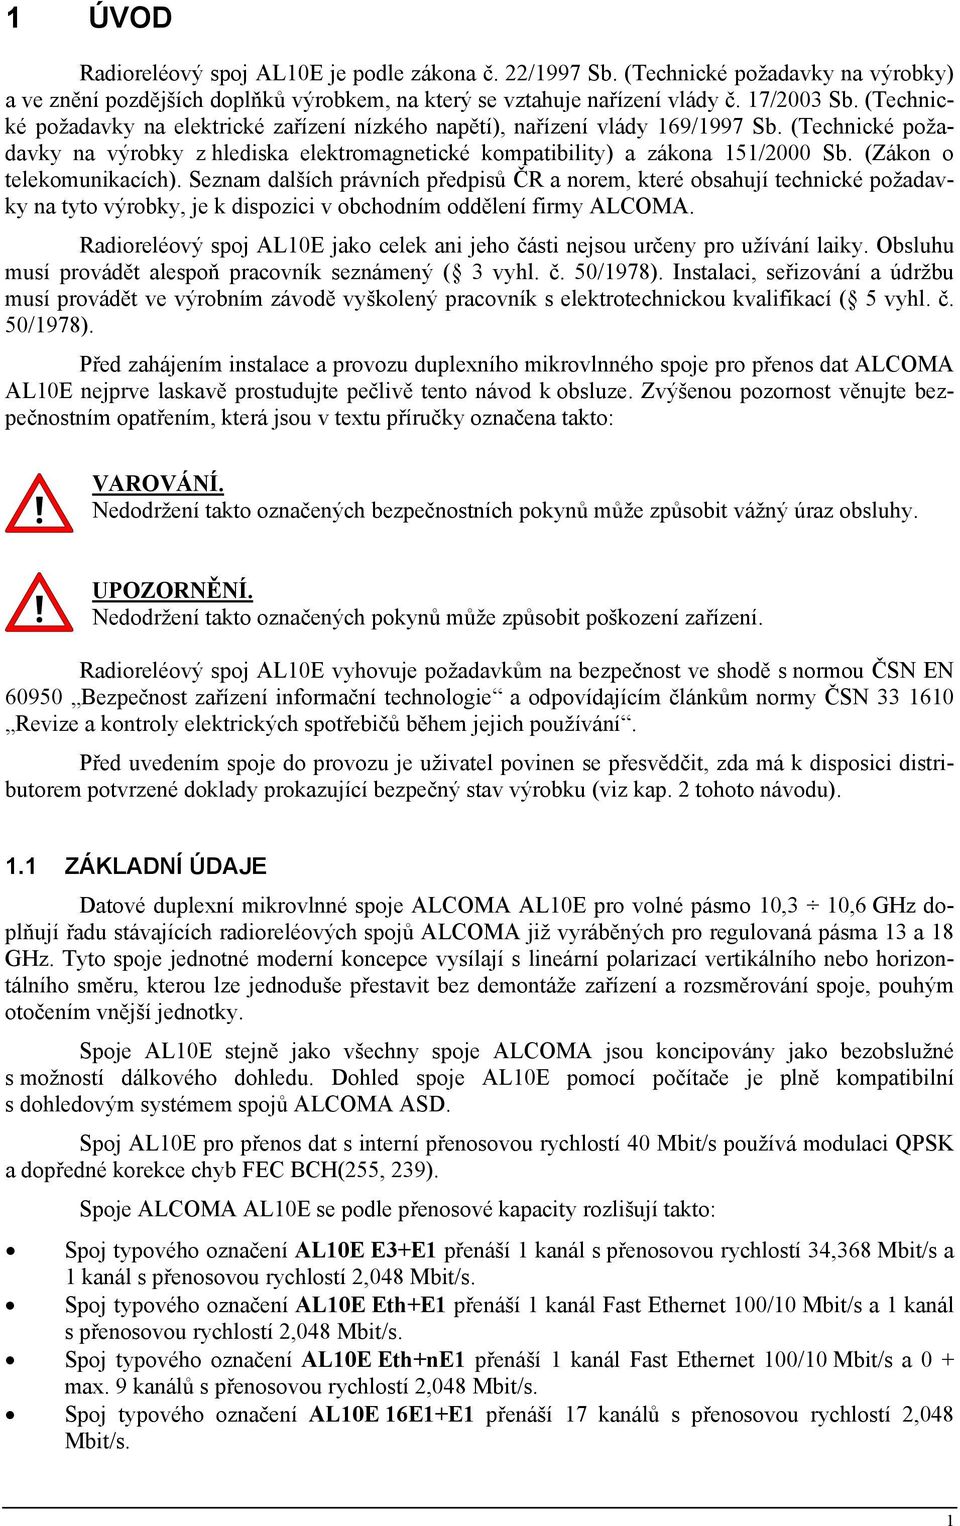 (Zákon o telekomunikacích). Seznam dalších právních předpisů ČR a norem, které obsahují technické požadavky na tyto výrobky, je k dispozici v obchodním oddělení firmy ALCOMA.